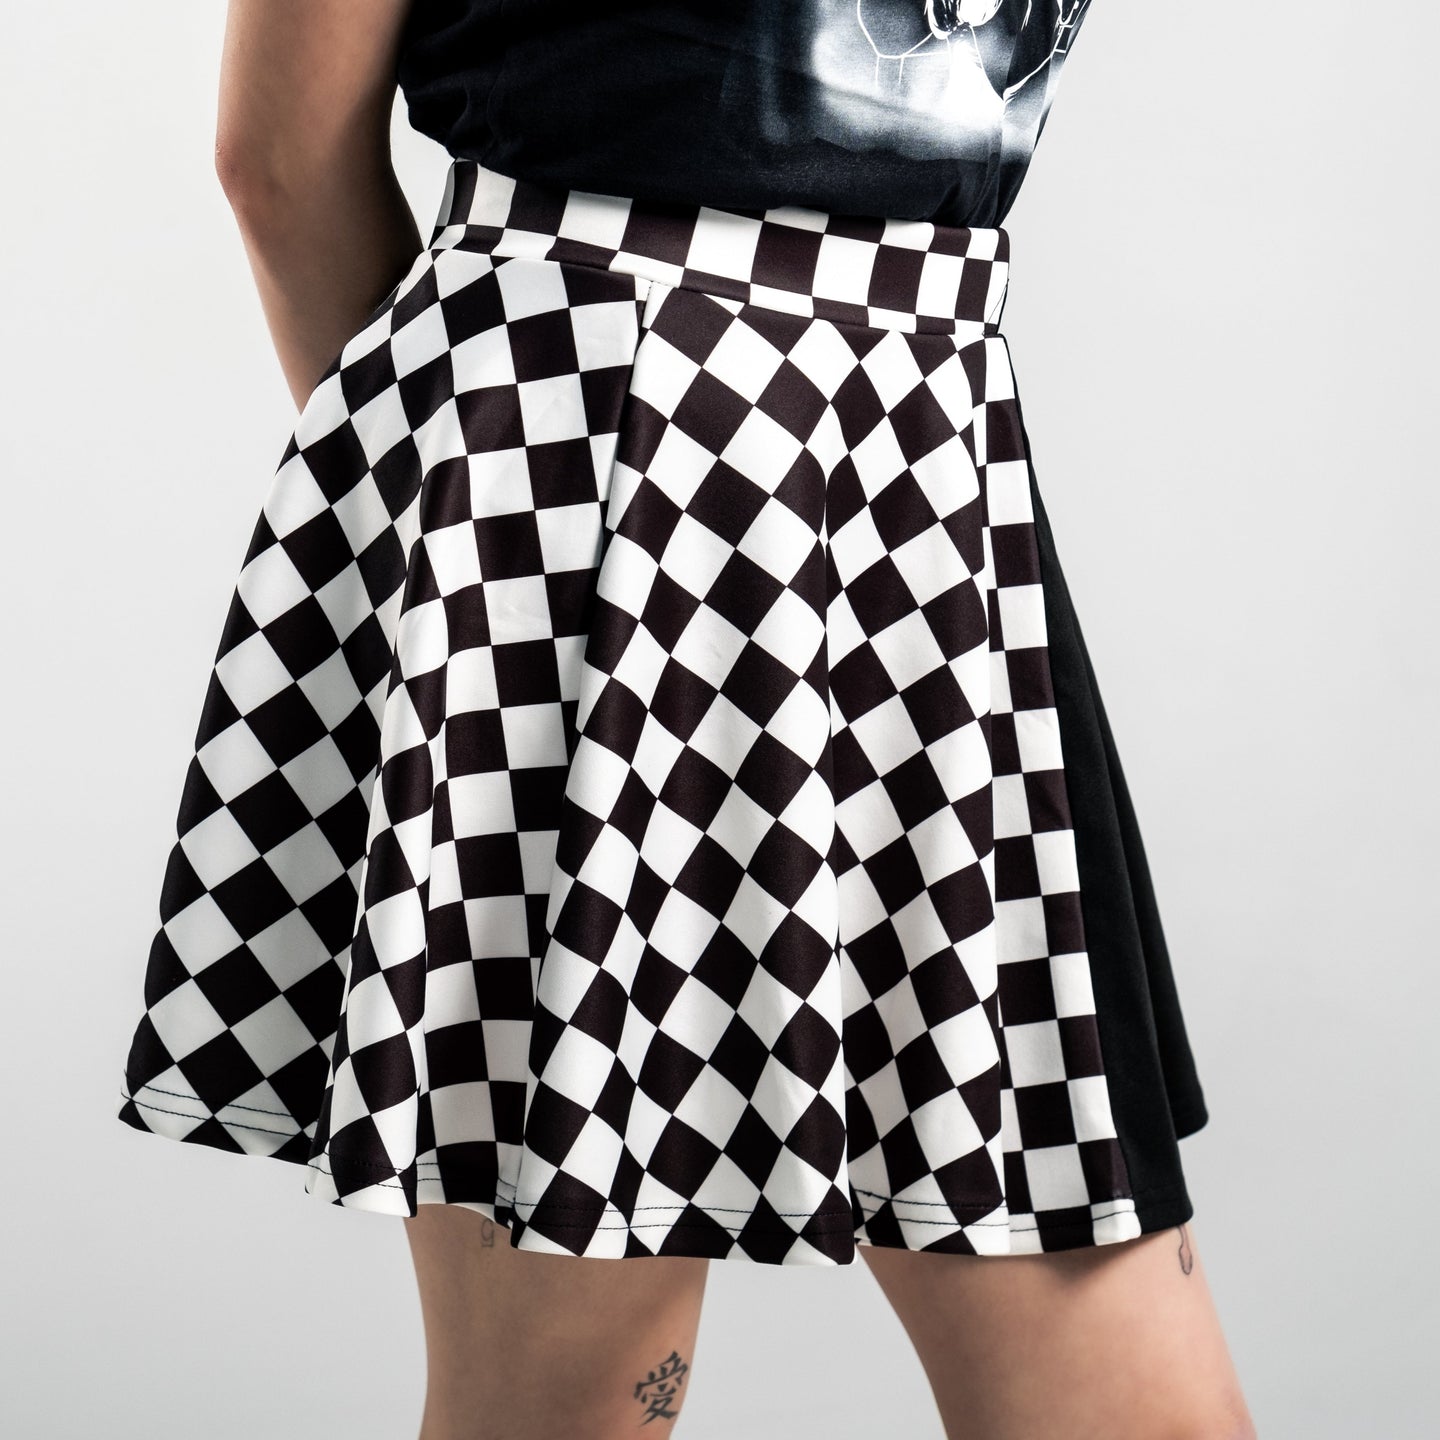 Black Checkered - Skirt